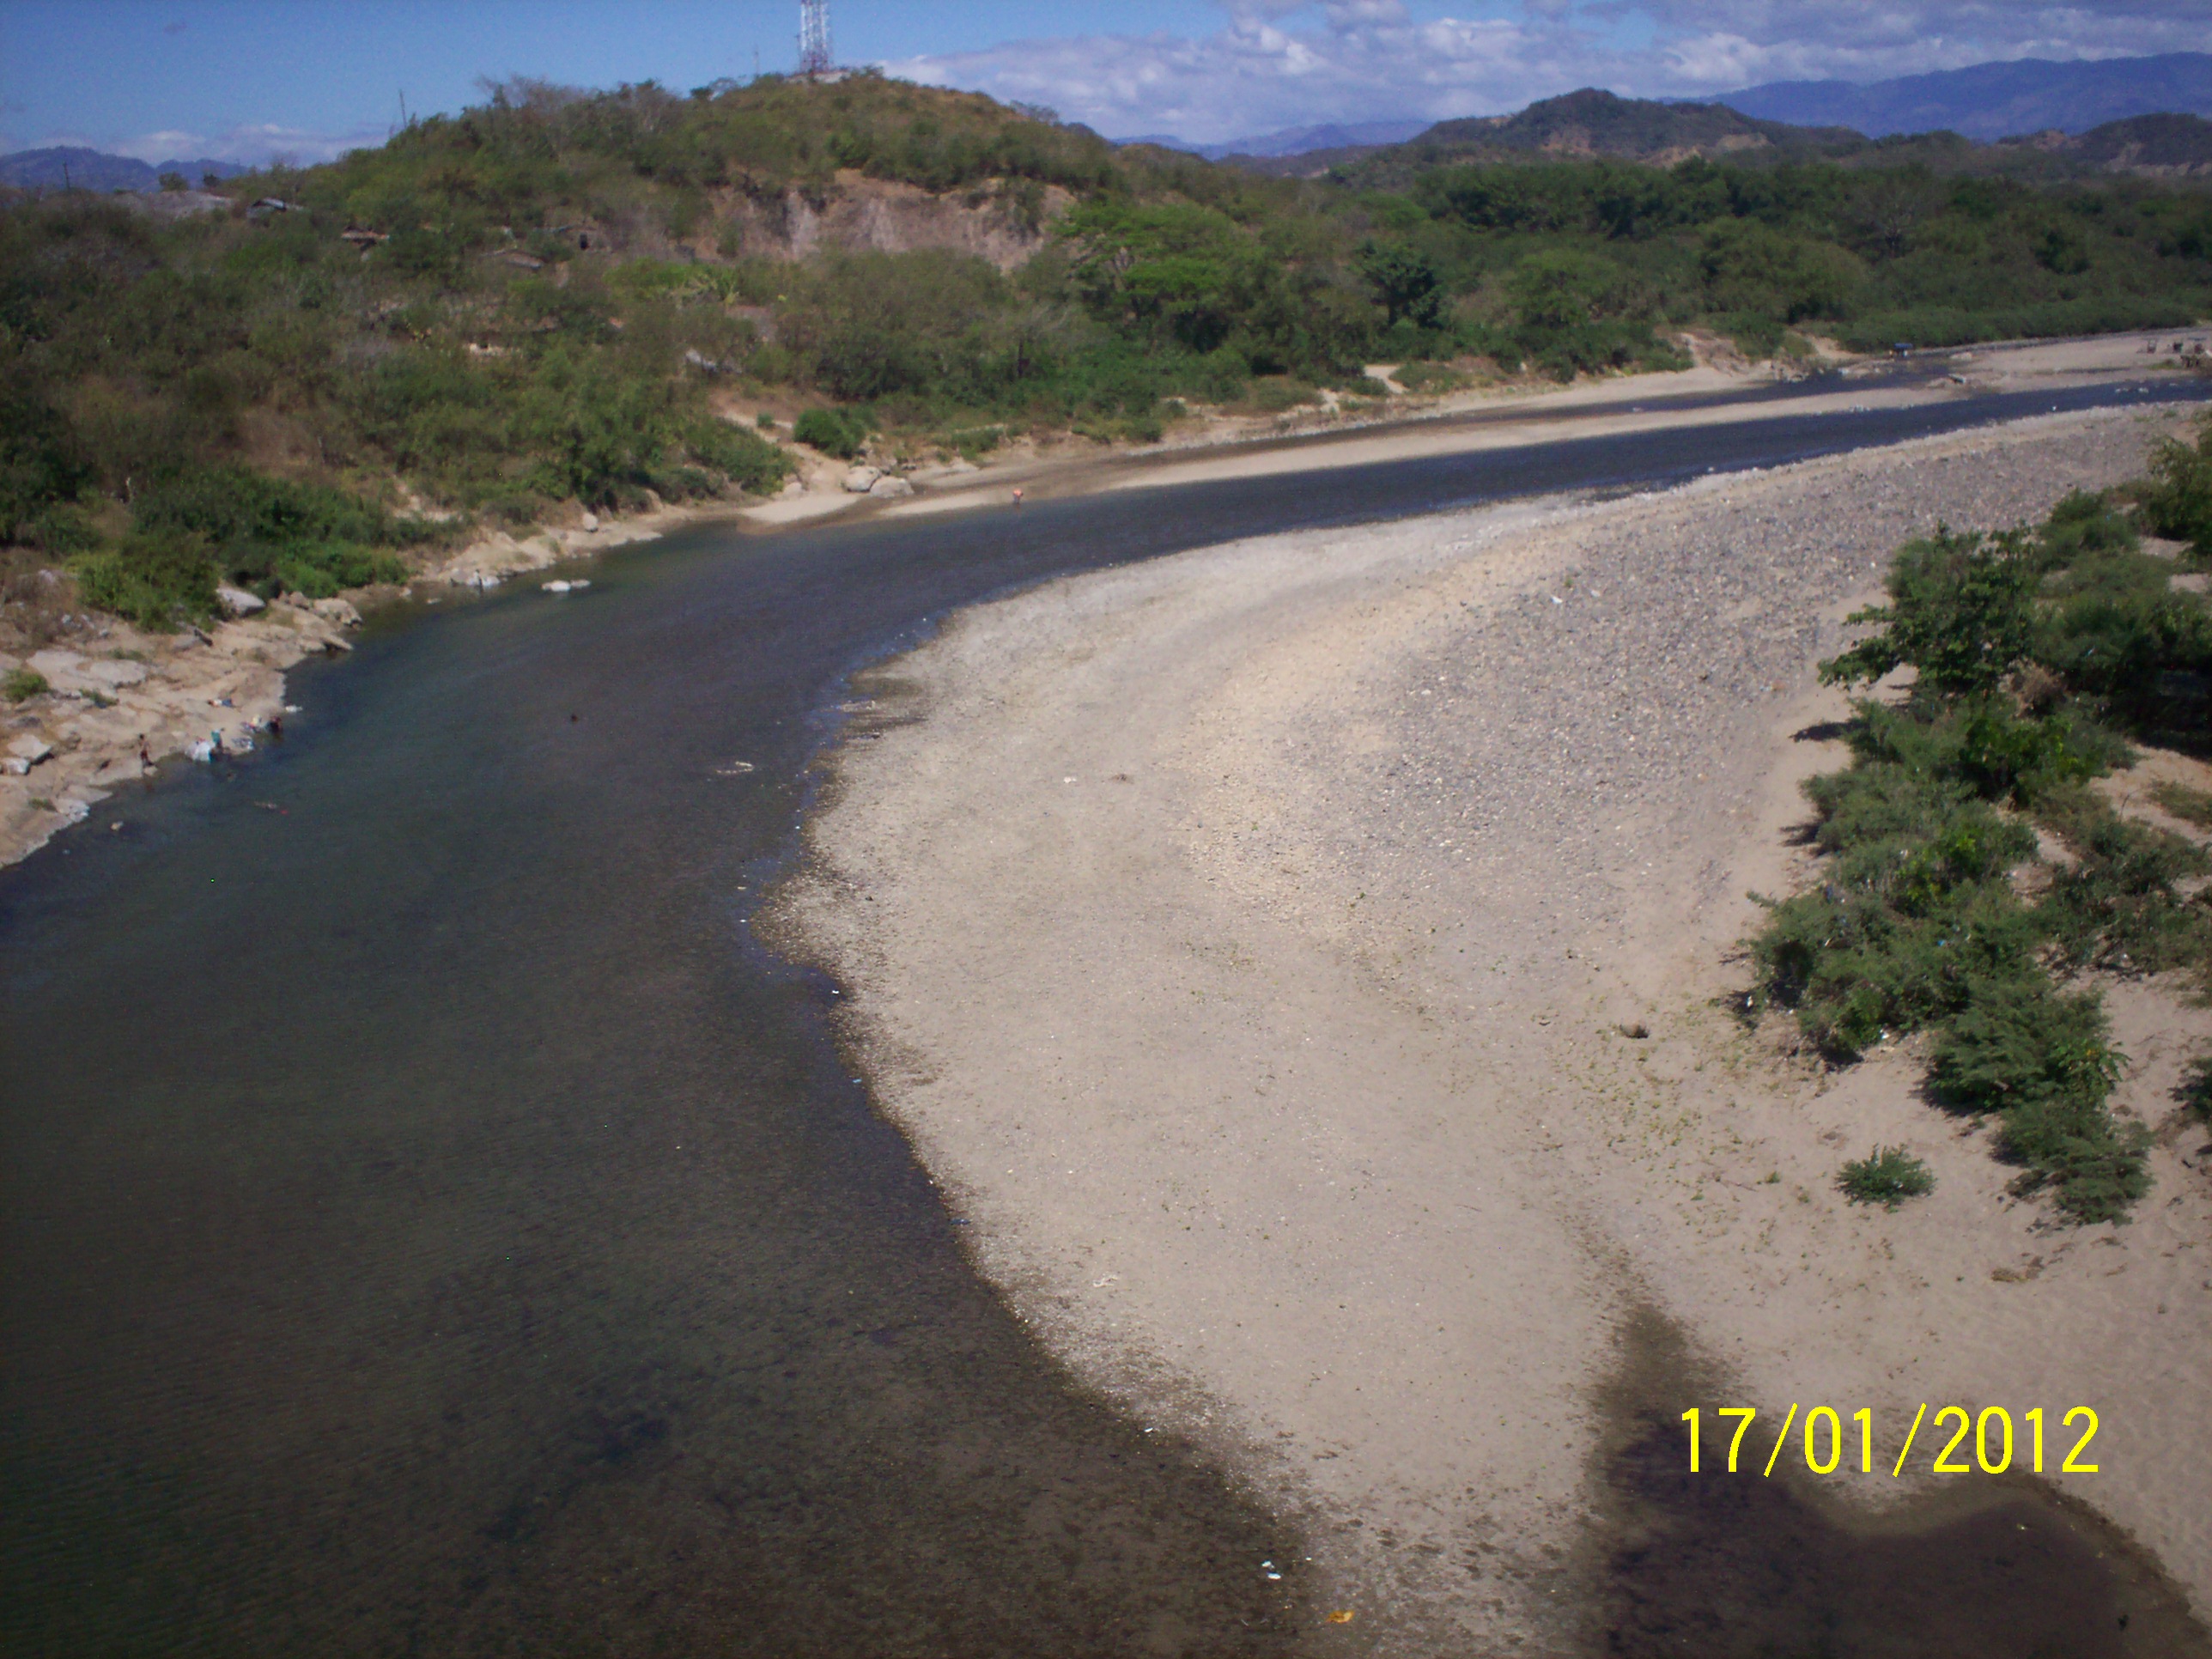 Foto: Rio choluteca - Choluteca, Honduras